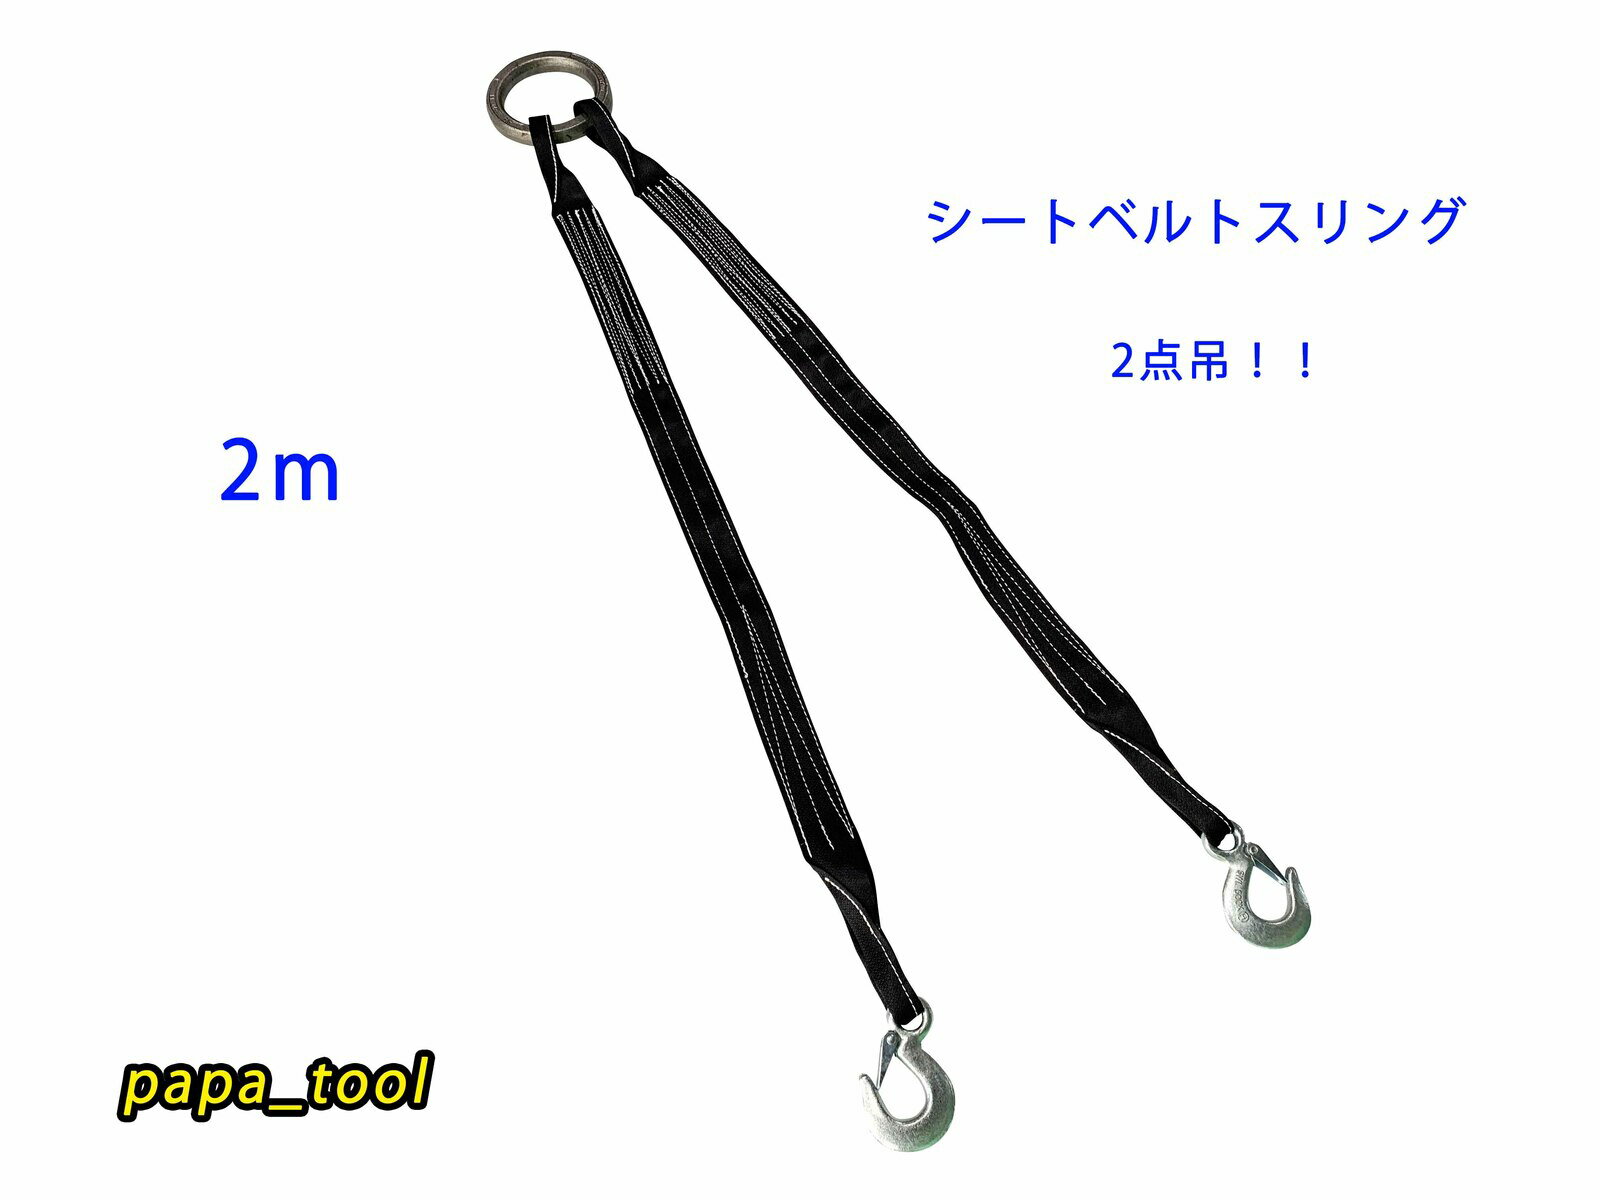 シートスリングベルト 2点吊 2m 使用荷重1t 軽量コンパクト 吊り具 ワイヤーロープ シートベルト スリング